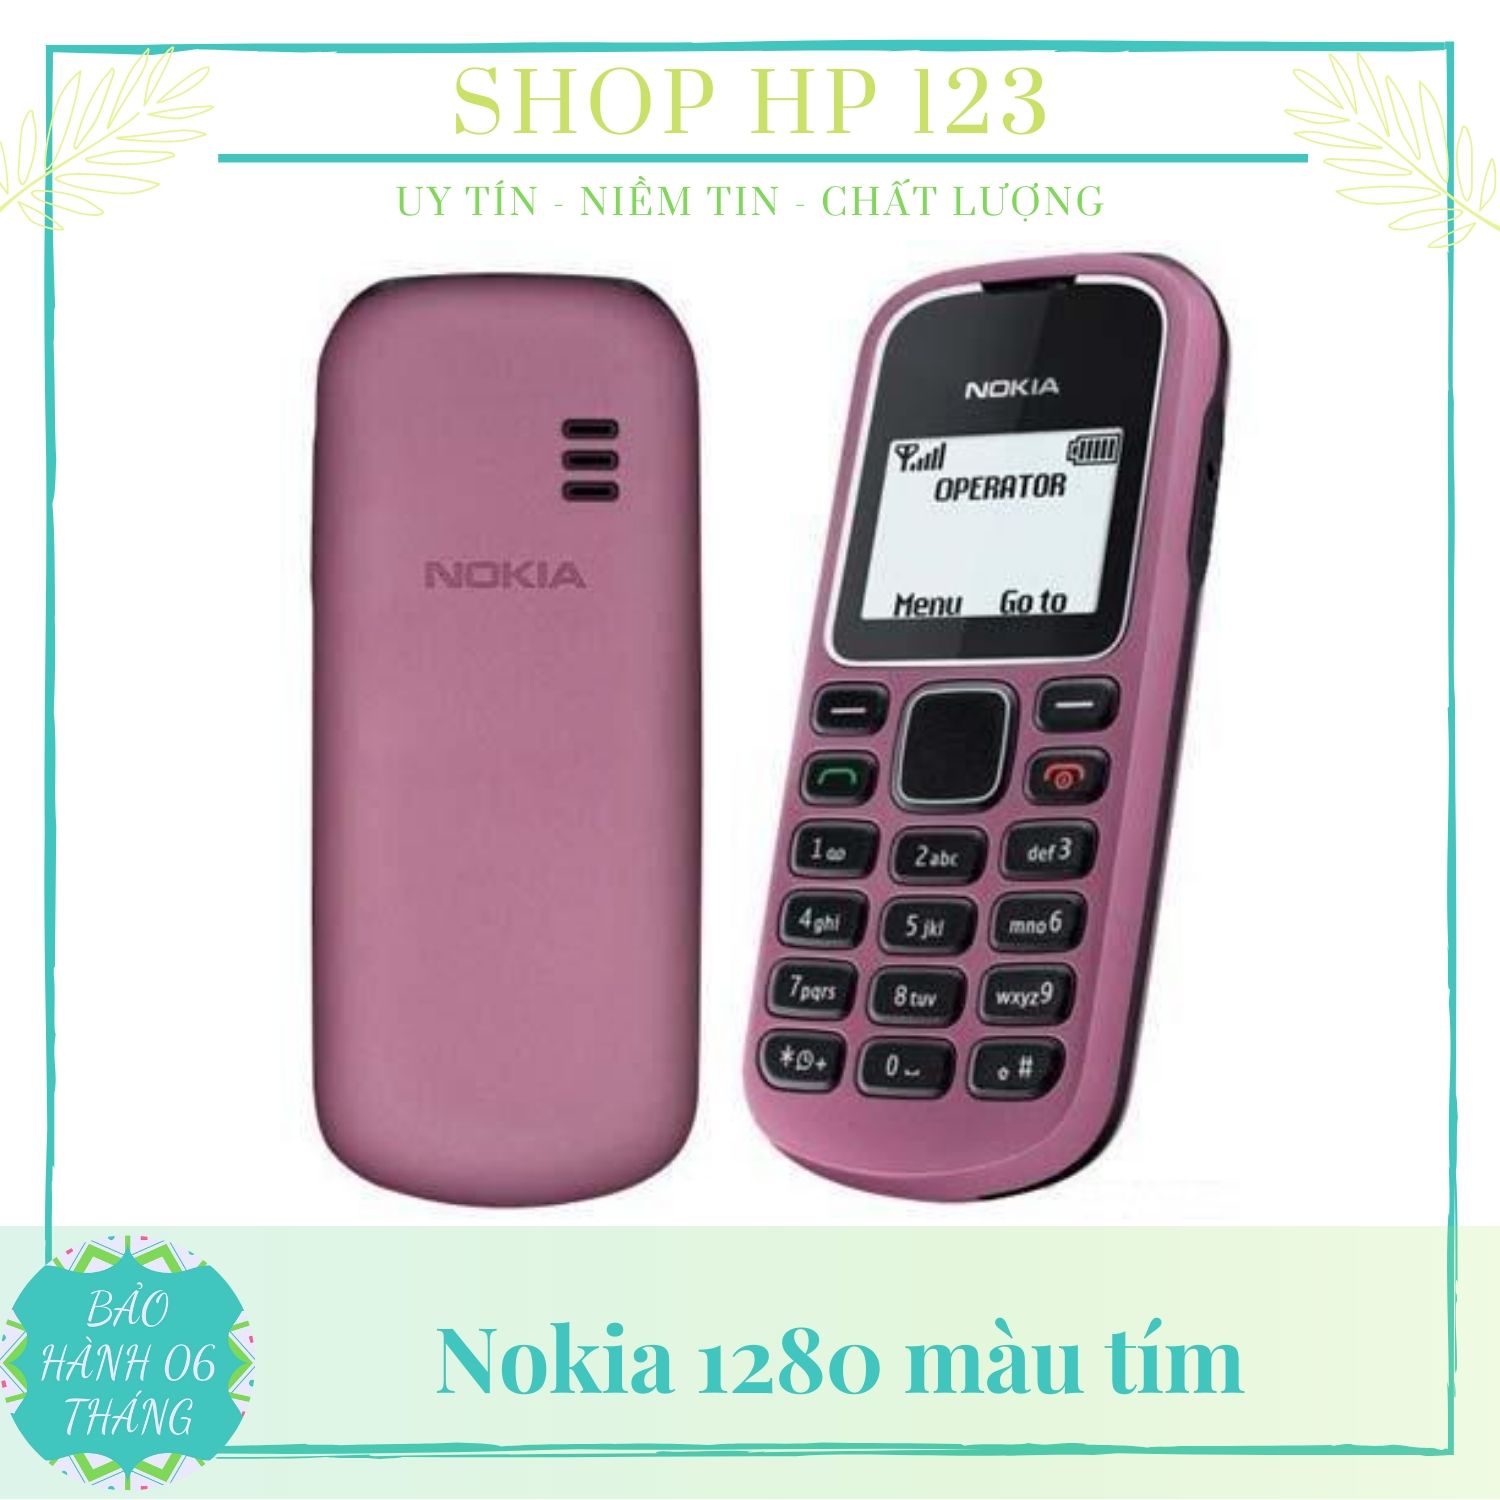 Thay hình Nokia 1280 1202 | Shopee Việt Nam